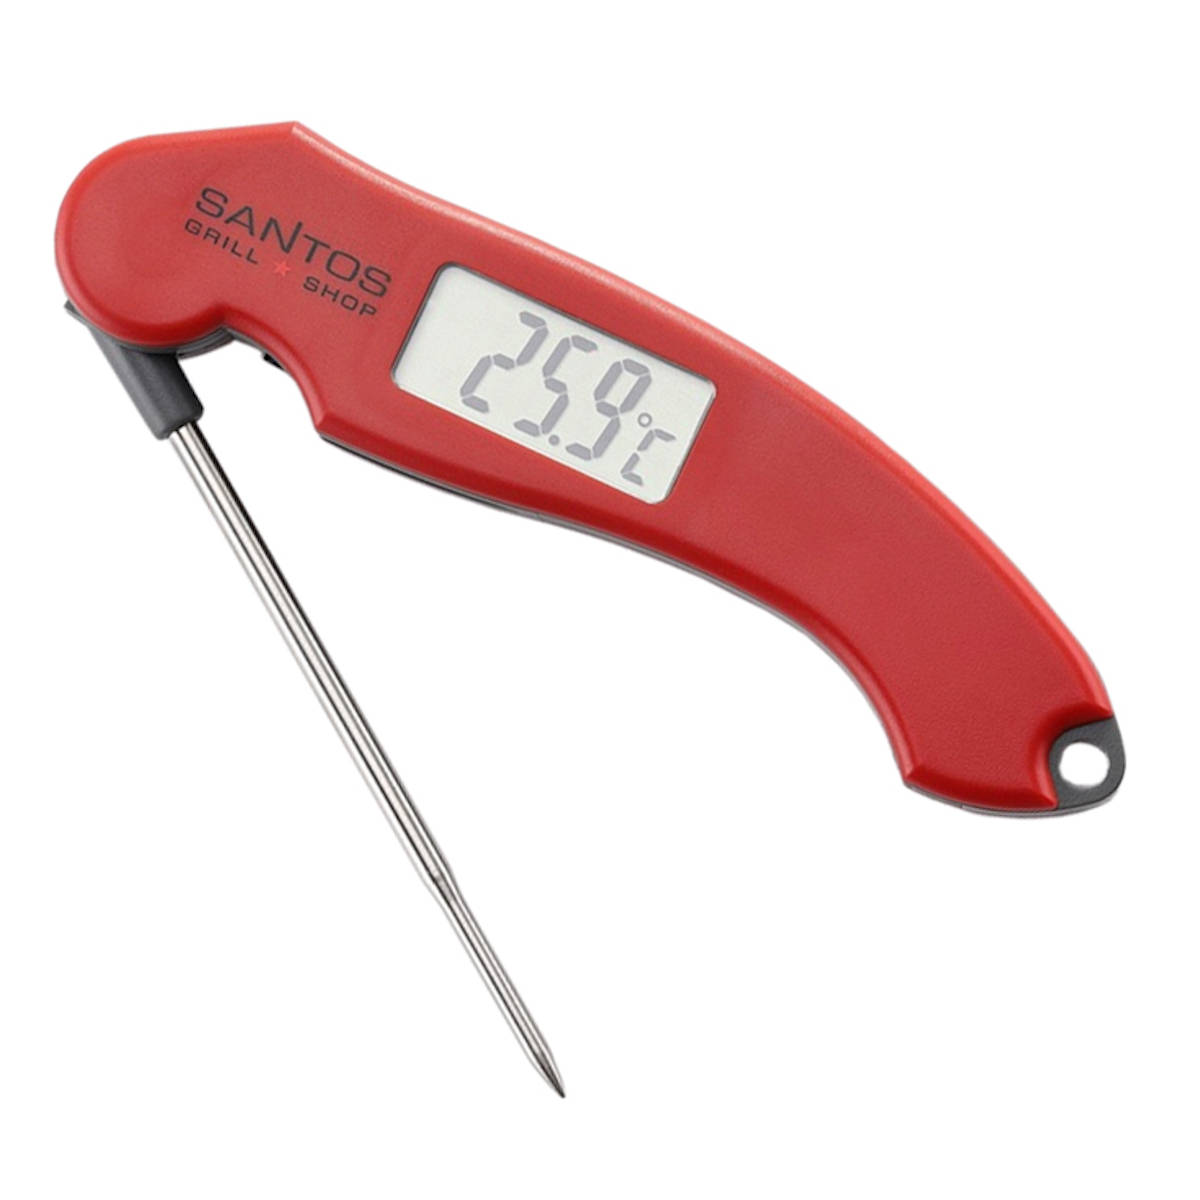 SANTOS klappbares BBQ Thermometer - Digital-Grillthermometer - Einstich- Thermometer - exakte Messergebnisse - Ideal für Low and Slow, Smoken,  Grillen